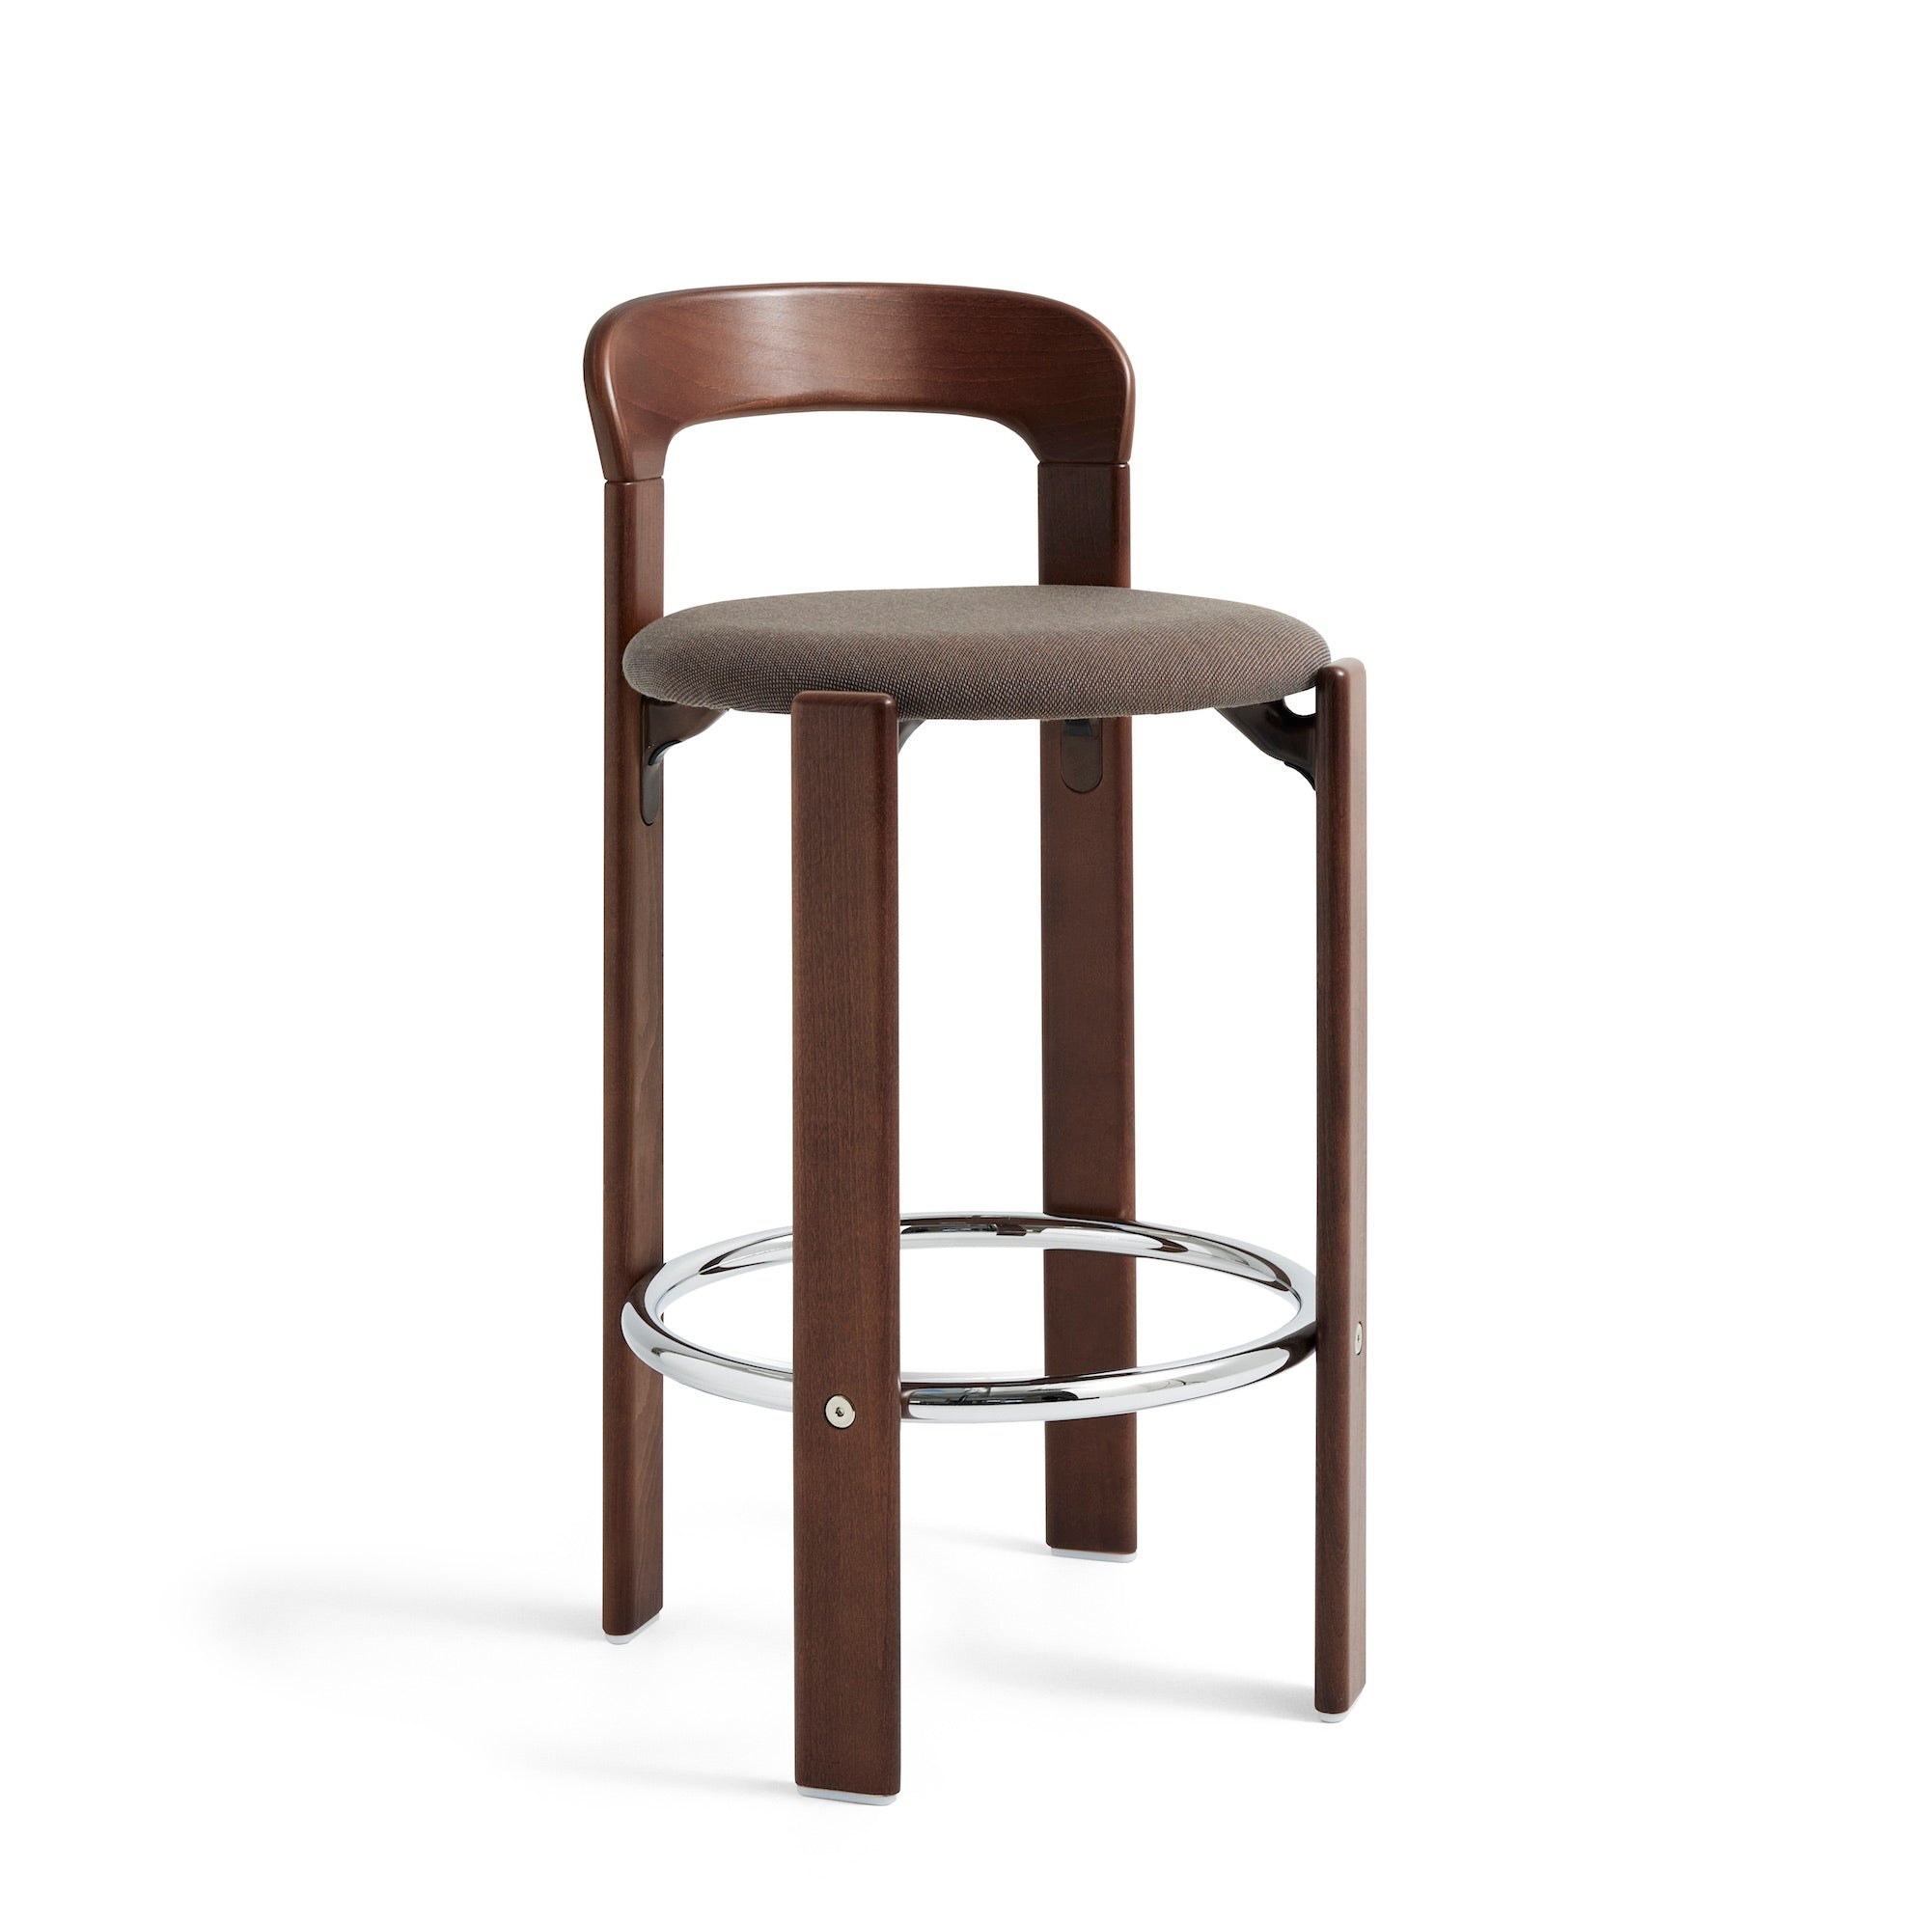 Rey Bar Stool Chair, scaun de bar tapițat, versiunea joasă